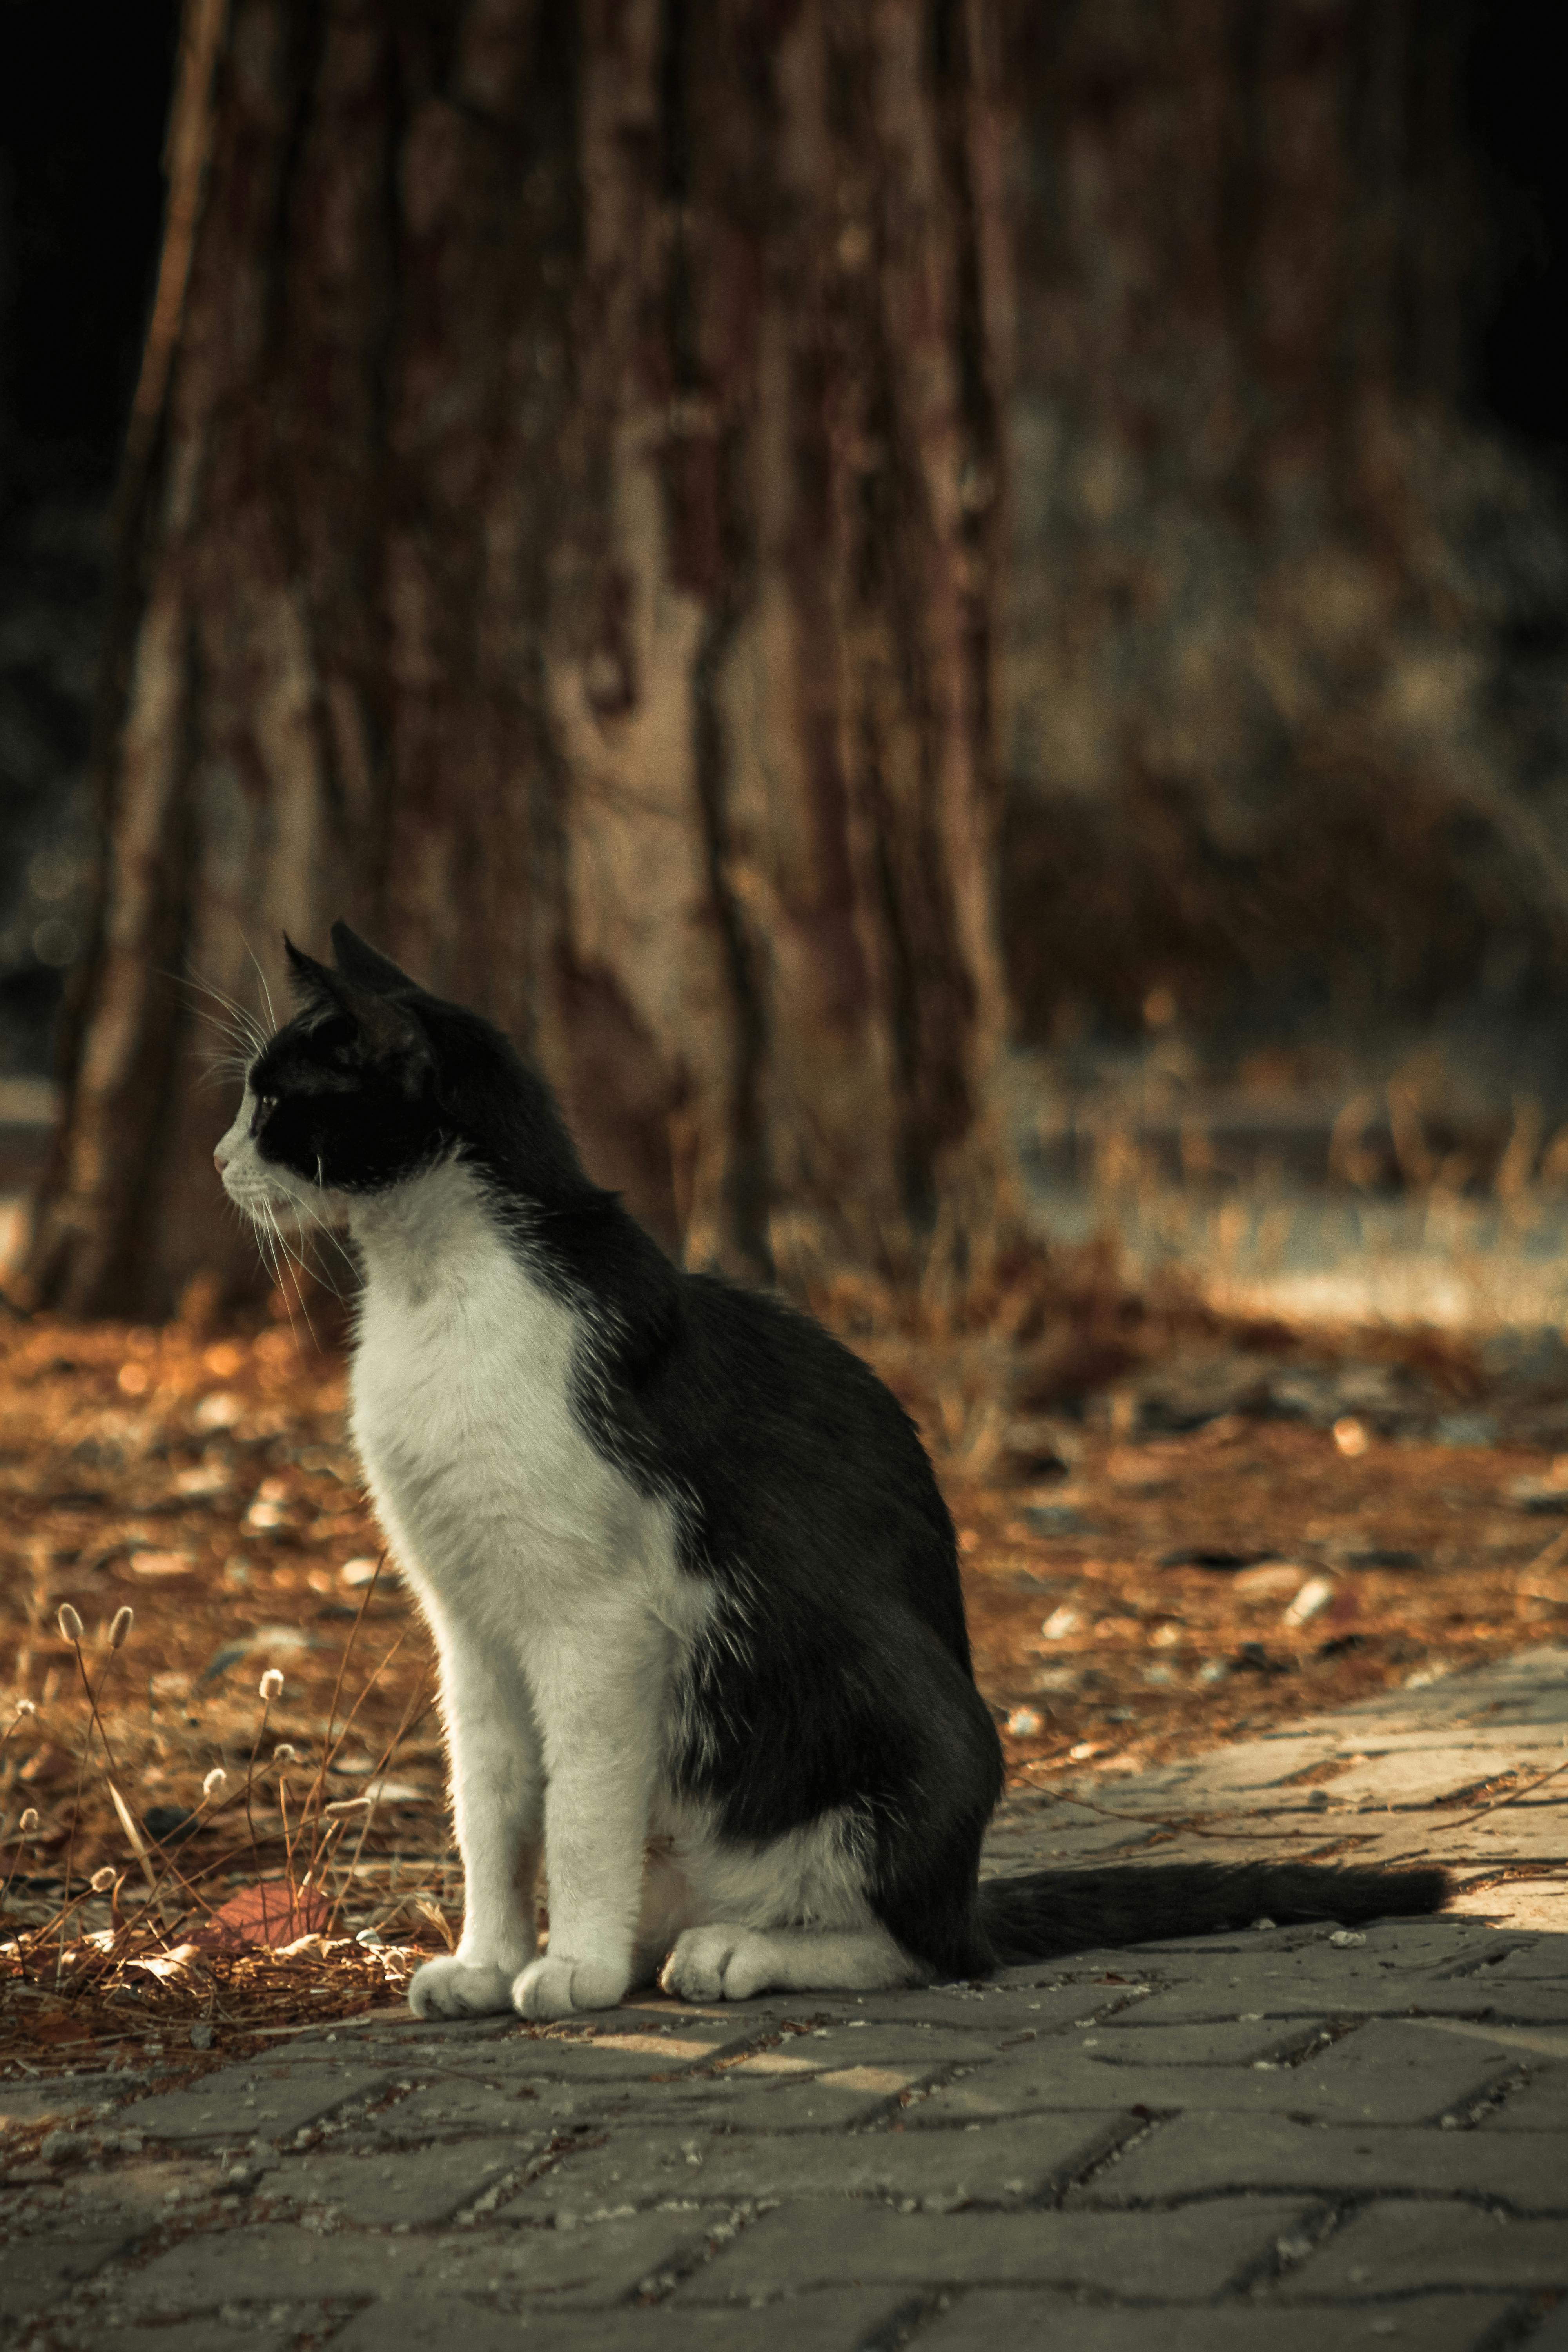 hình ảnh : đen và trắng, Mèo con, con mèo, Động vật có vú, meo đen, Đơn  sắc, Đóng lên, Mũi, Râu, Mõm, Động vật có xương sống, Nhiếp ảnh đơn sắc,